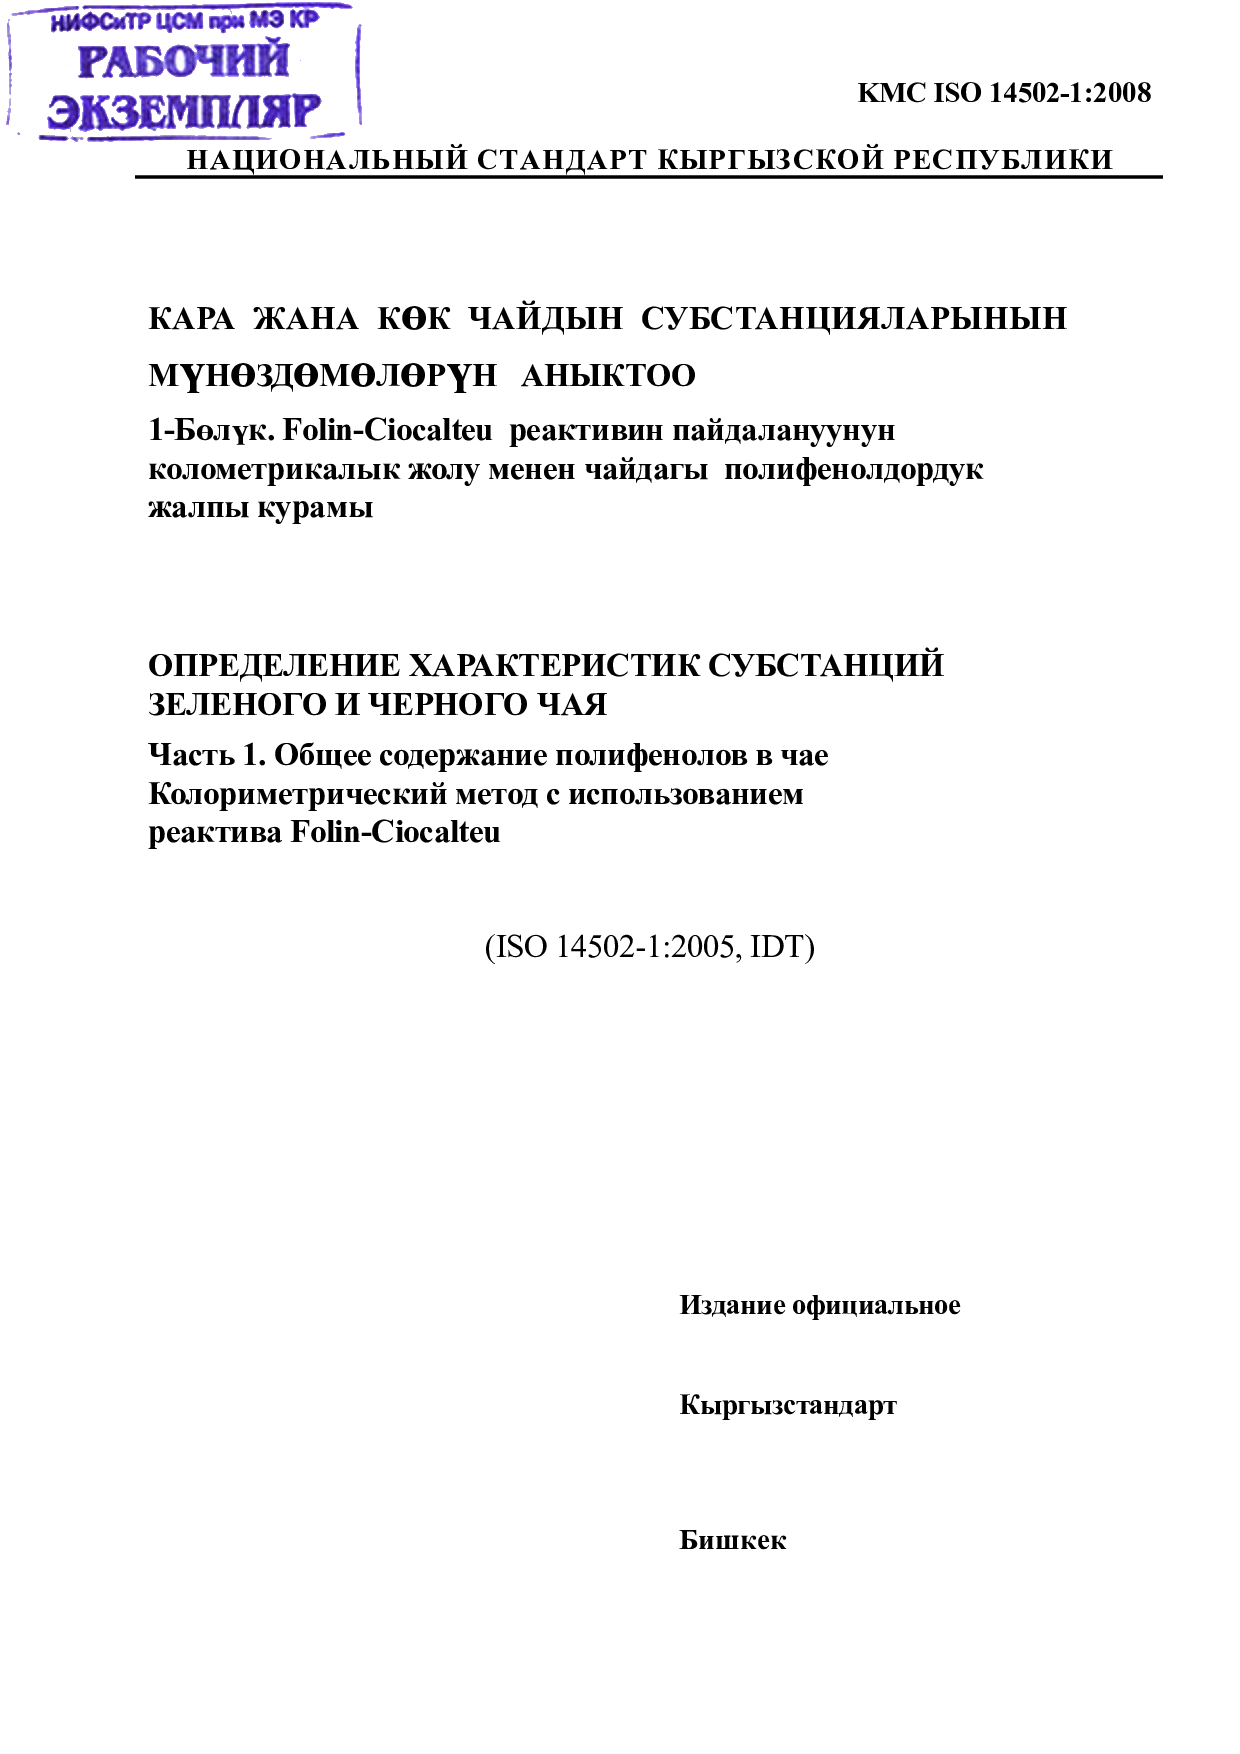 ОПРЕДЕЛЕНИЕ ХАРАКТЕРИСТИК СУБСТАНЦИЙ   ЗЕЛЕНОГО И ЧЕРНОГО ЧАЯ   Часть 1. Общее содержание полифенолов в чае   Колориметрический метод с использованием  реактива Folin-Ciocalteu